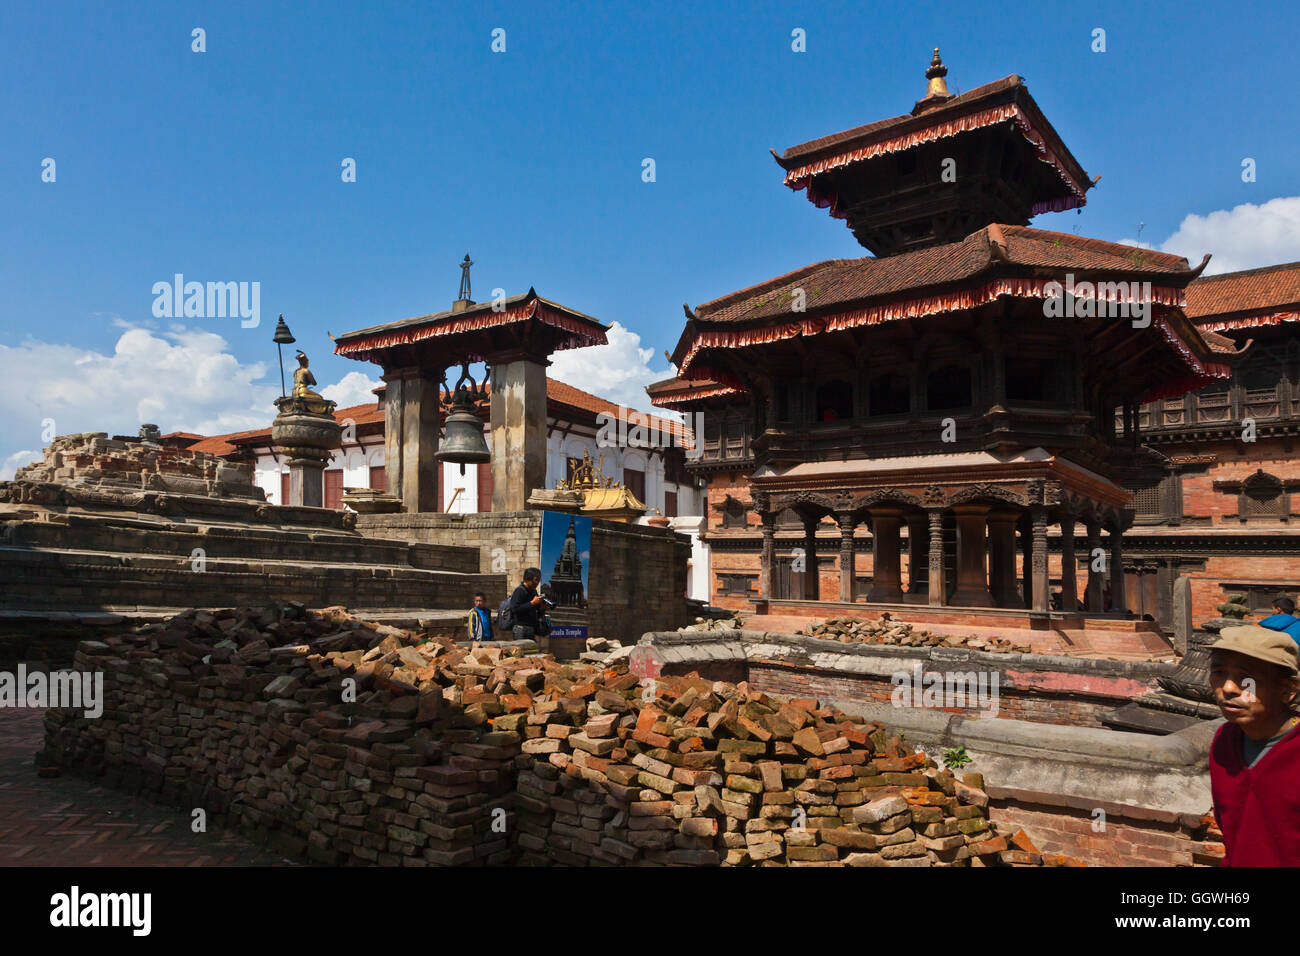 La ville traditionnelle de Bhaktapur qui avait été gravement endommagé par le séisme de 2015 - Népal Banque D'Images